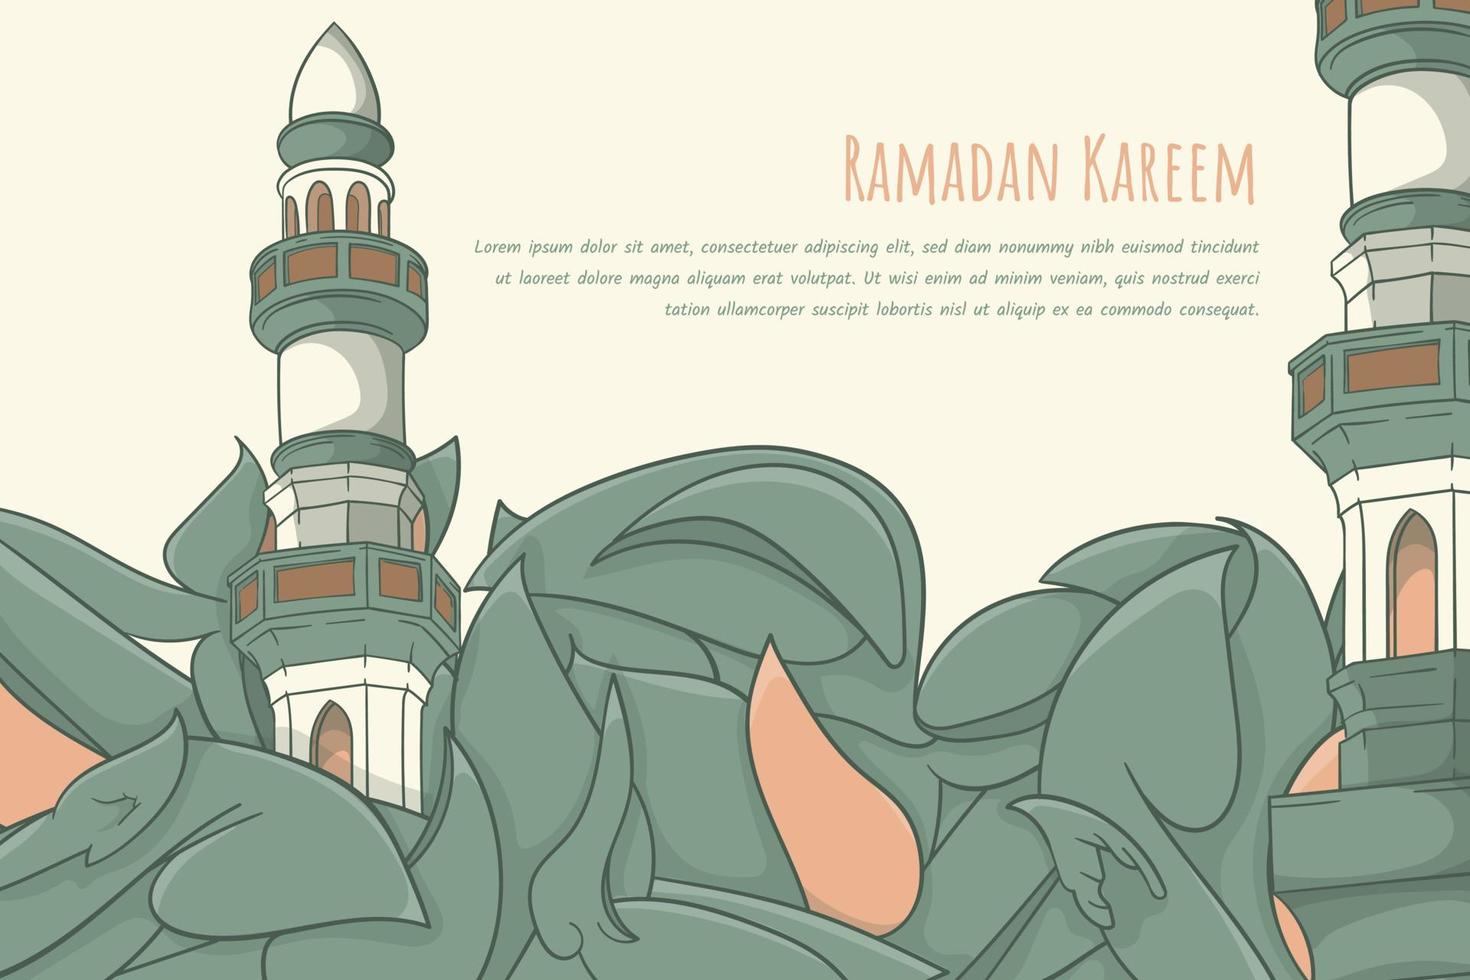 blad bakgrund i klotter konst design med moské minaret för ramadan kareem mall design vektor